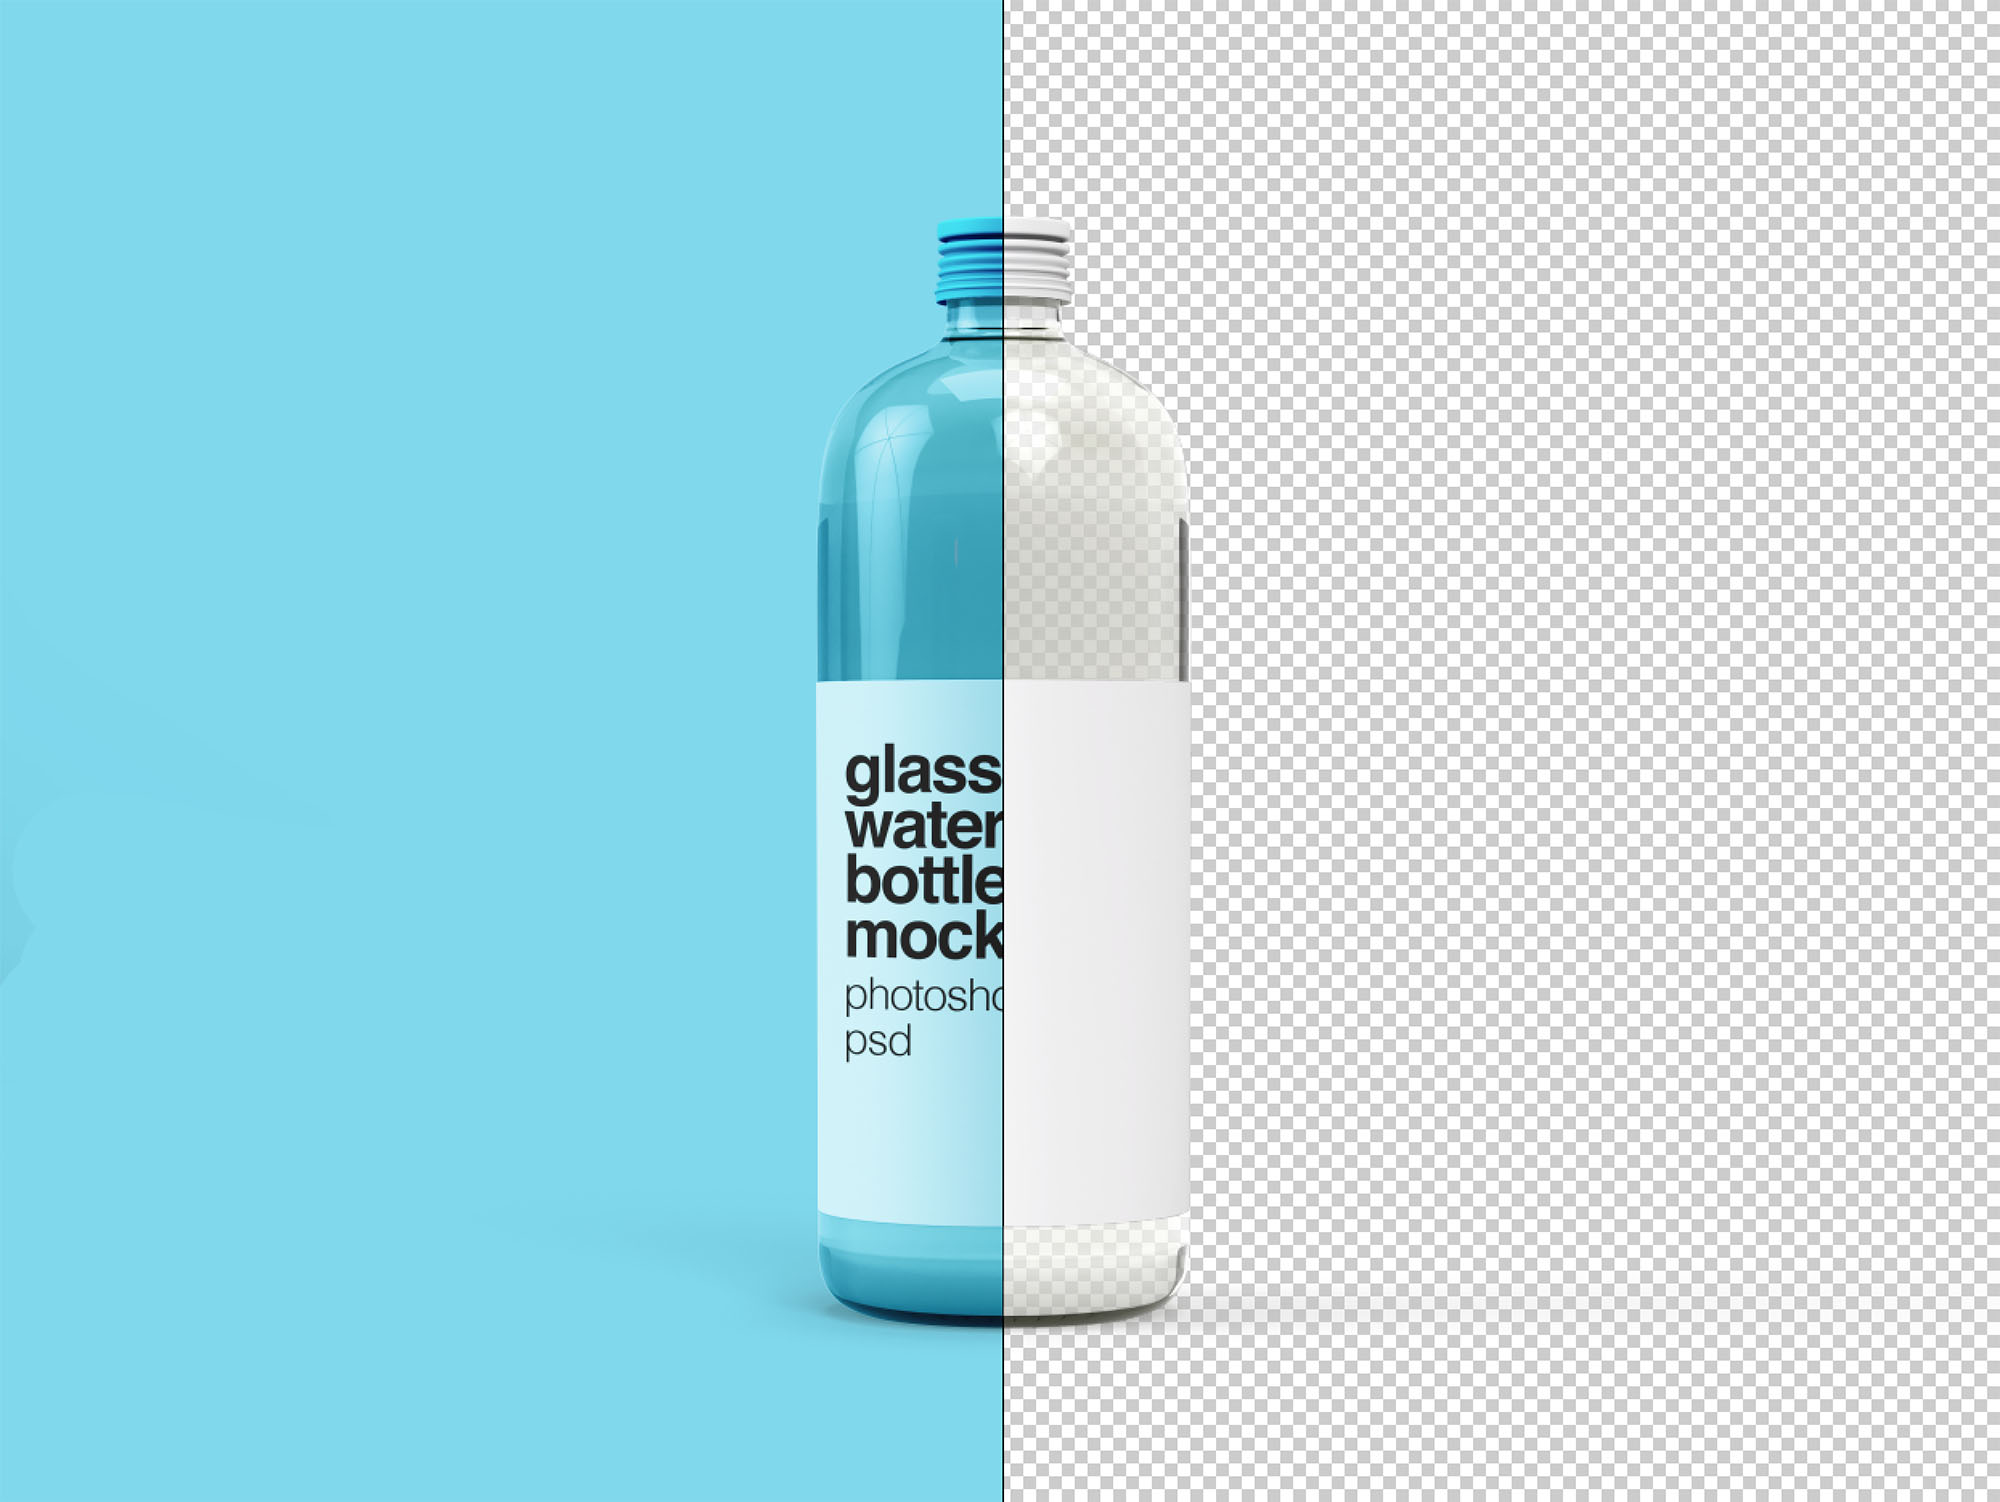 饮用水玻璃瓶外观设计图样机模板 Glass Water Bo